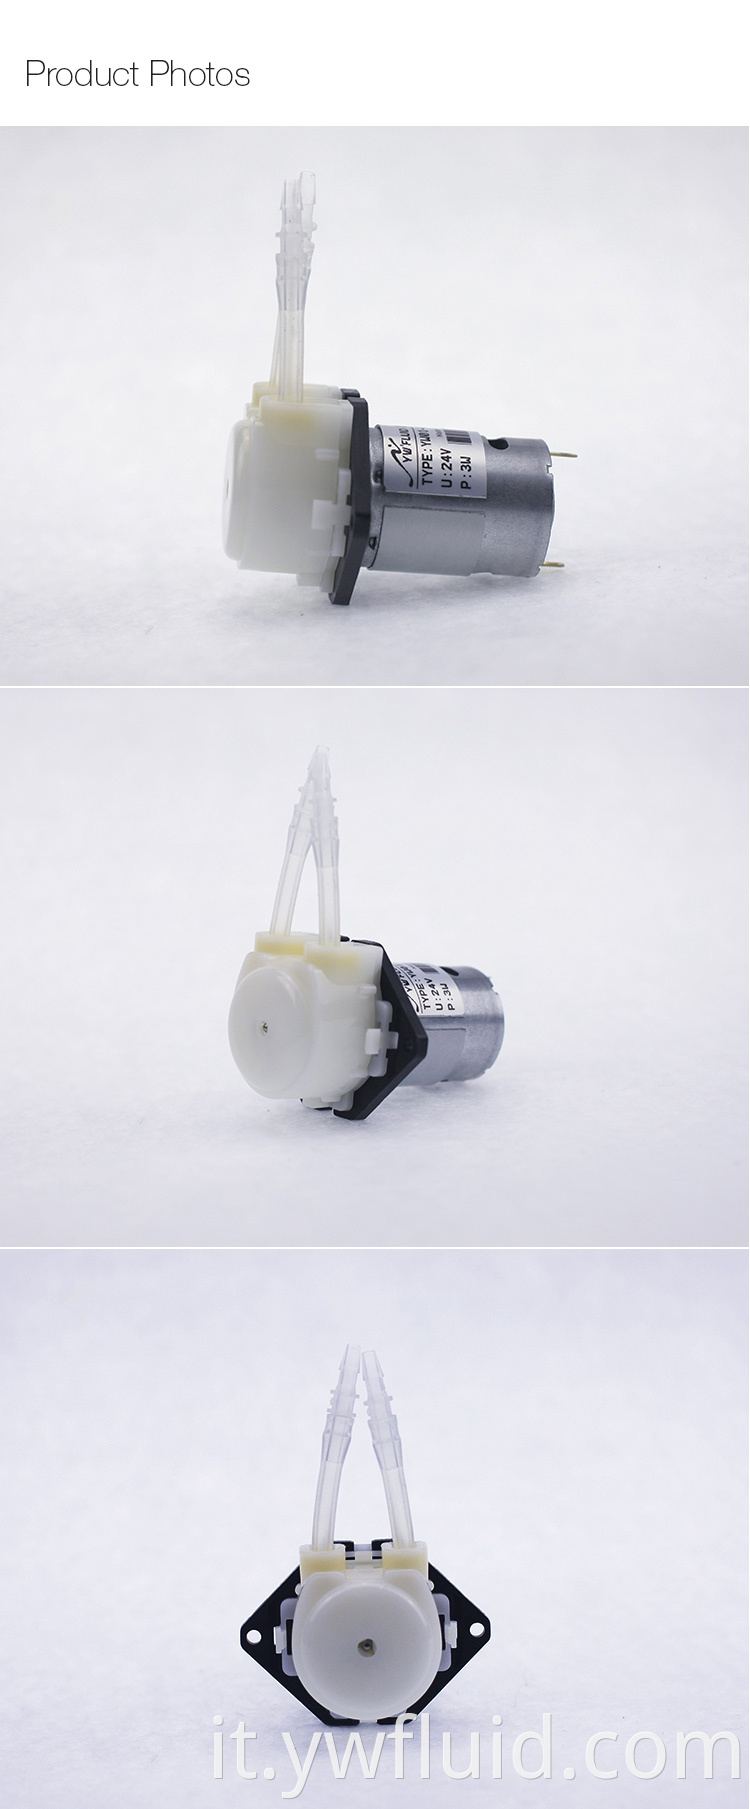 Pompa dosatrice micro peristaltica ad alta pressione prodotta in Cina